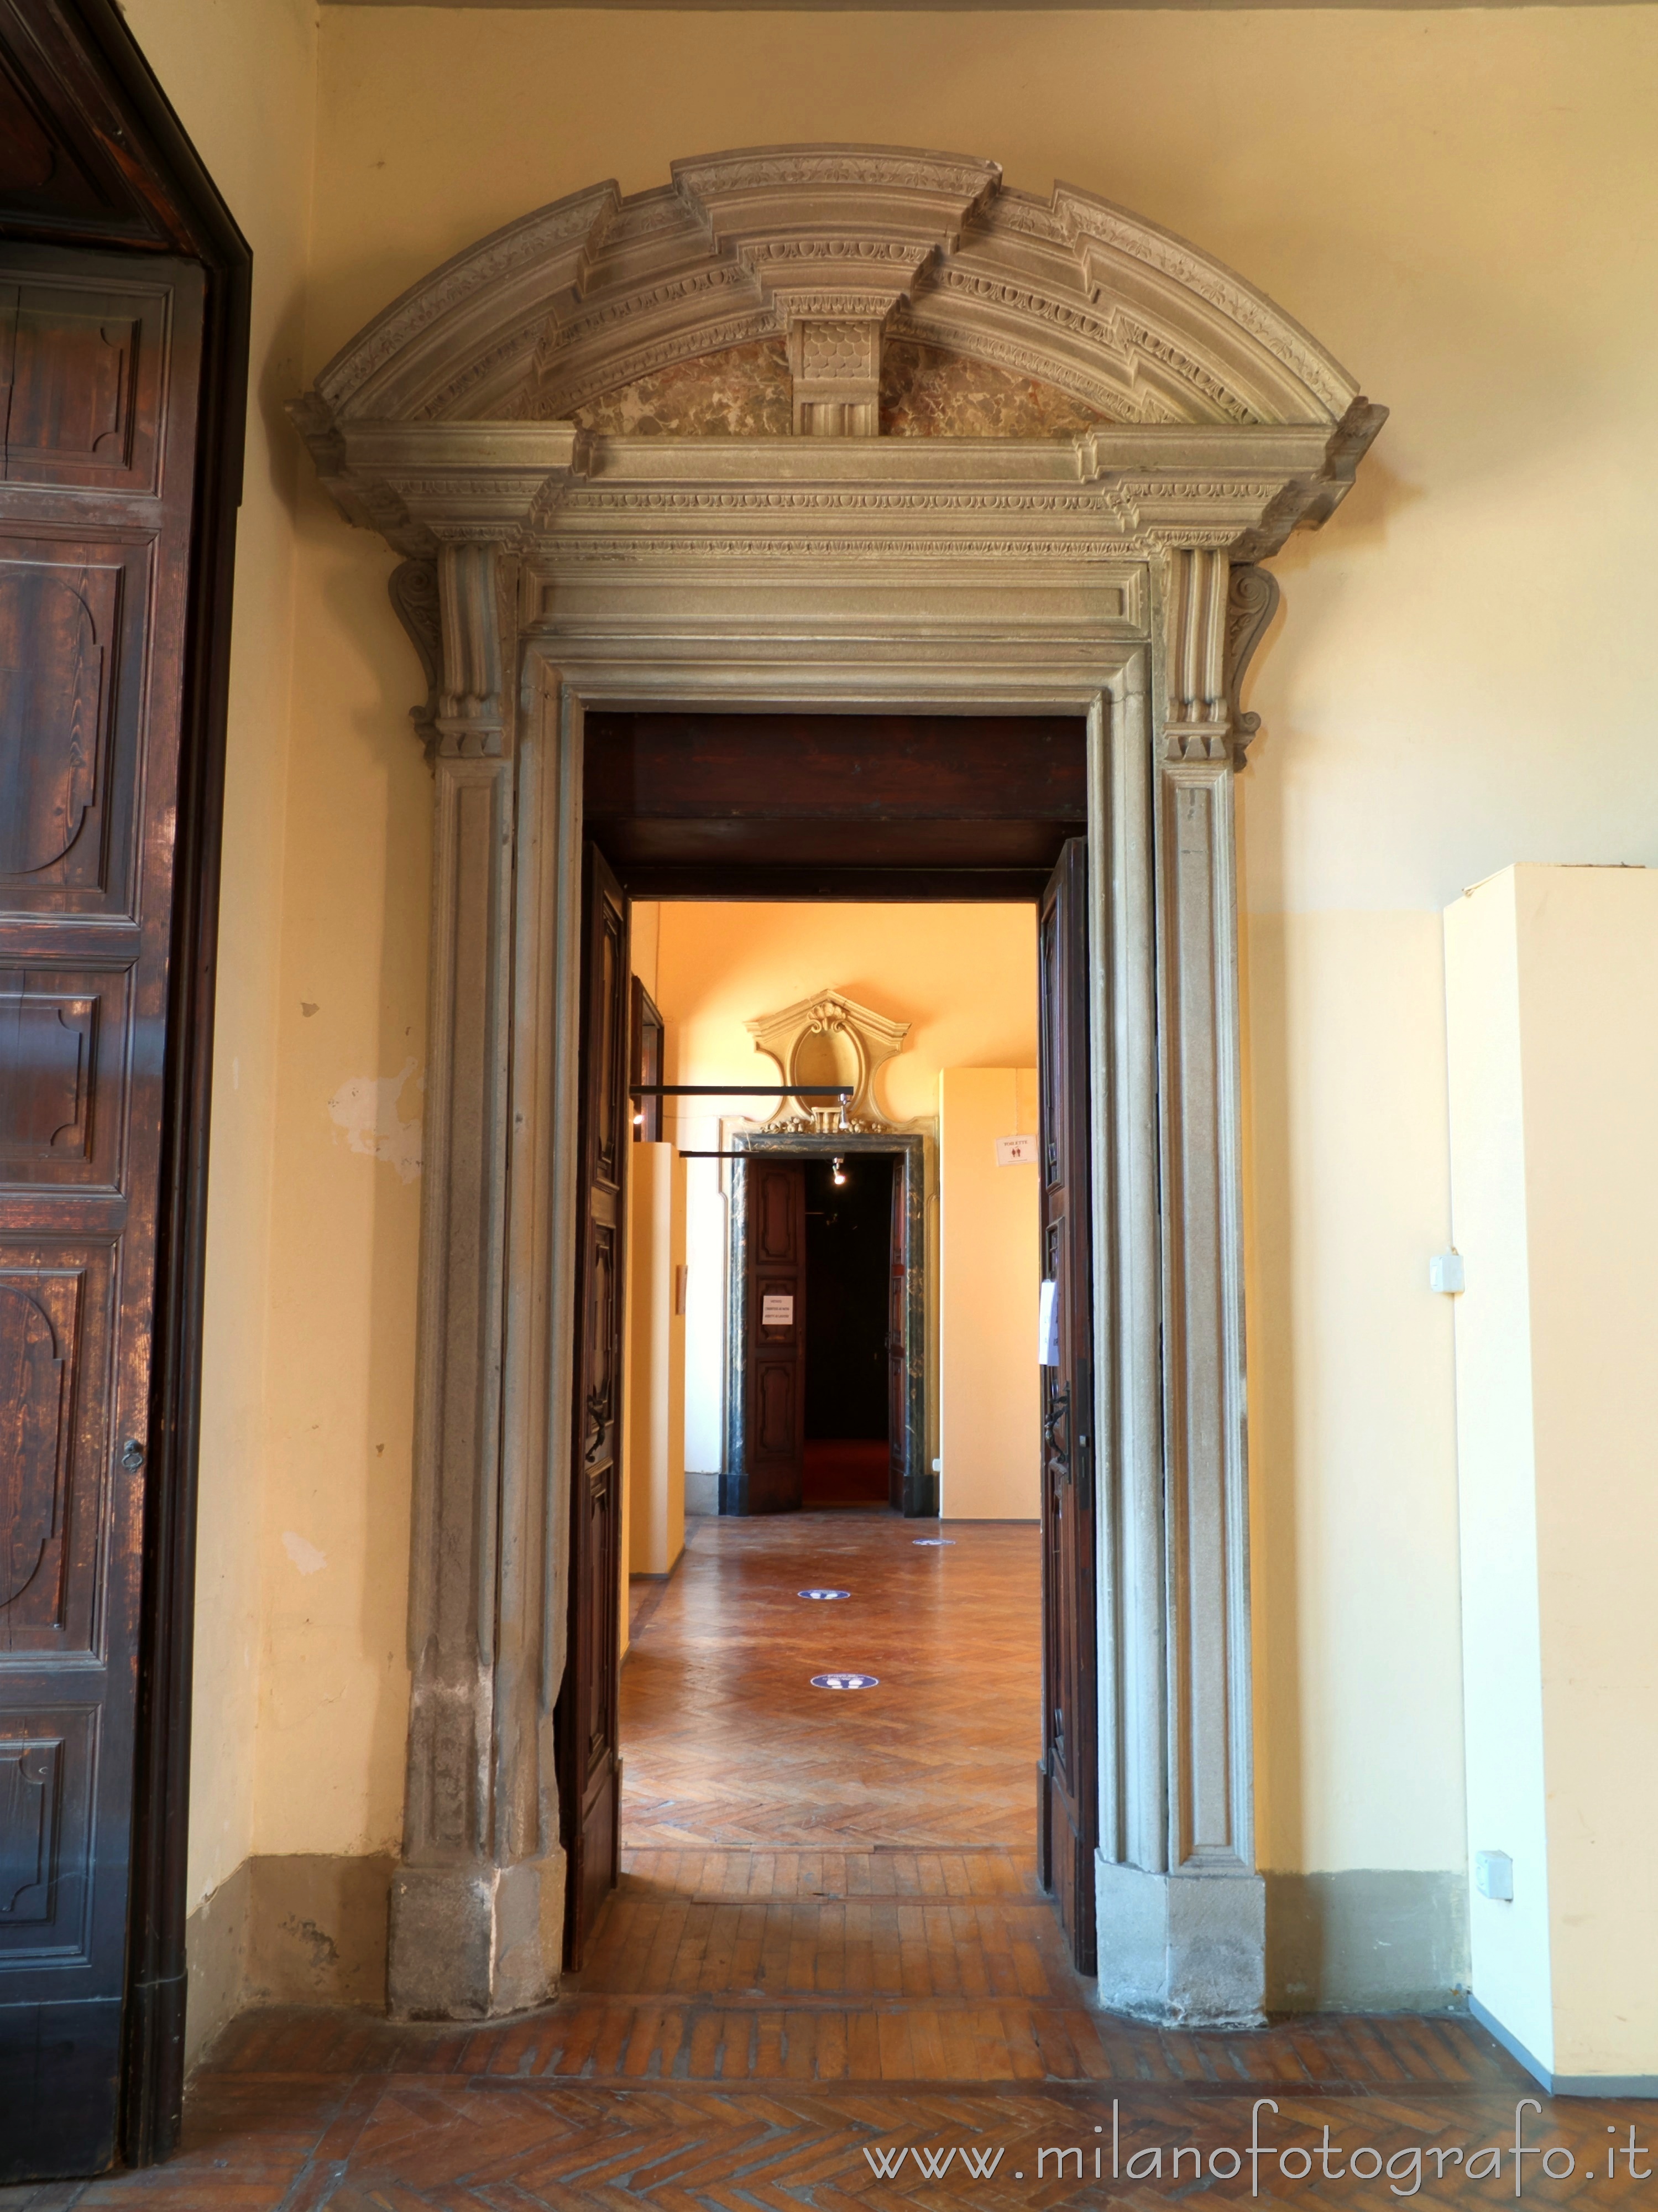 Varedo (Monza e Brianza, Italy): Internal portal in Villa Bagatti Valsecchi - Varedo (Monza e Brianza, Italy)